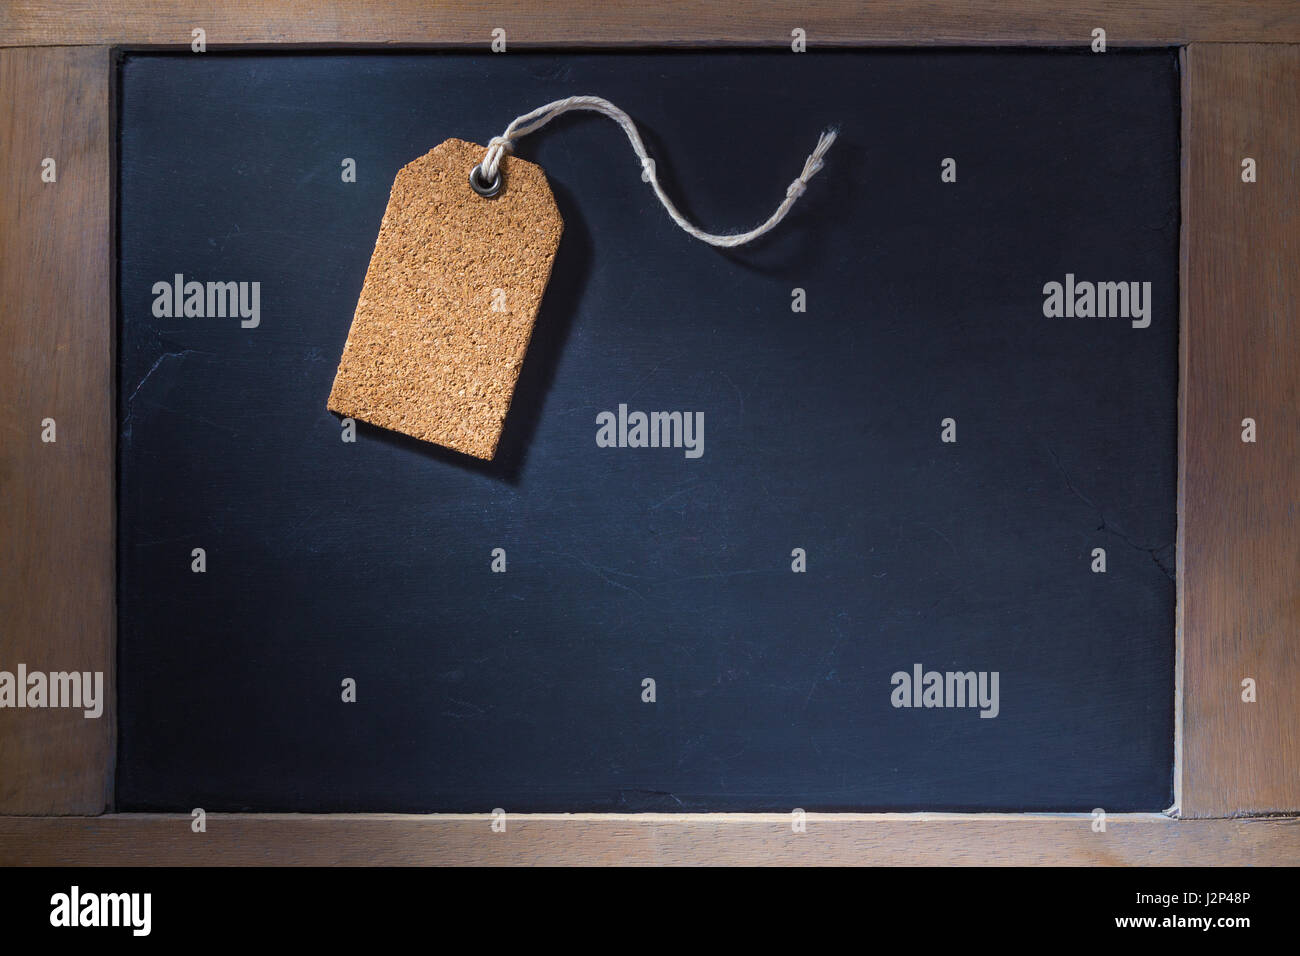 Empty cork tag su piccola lavagna con cornice in legno duro, illuminazione con ombre dure Foto Stock